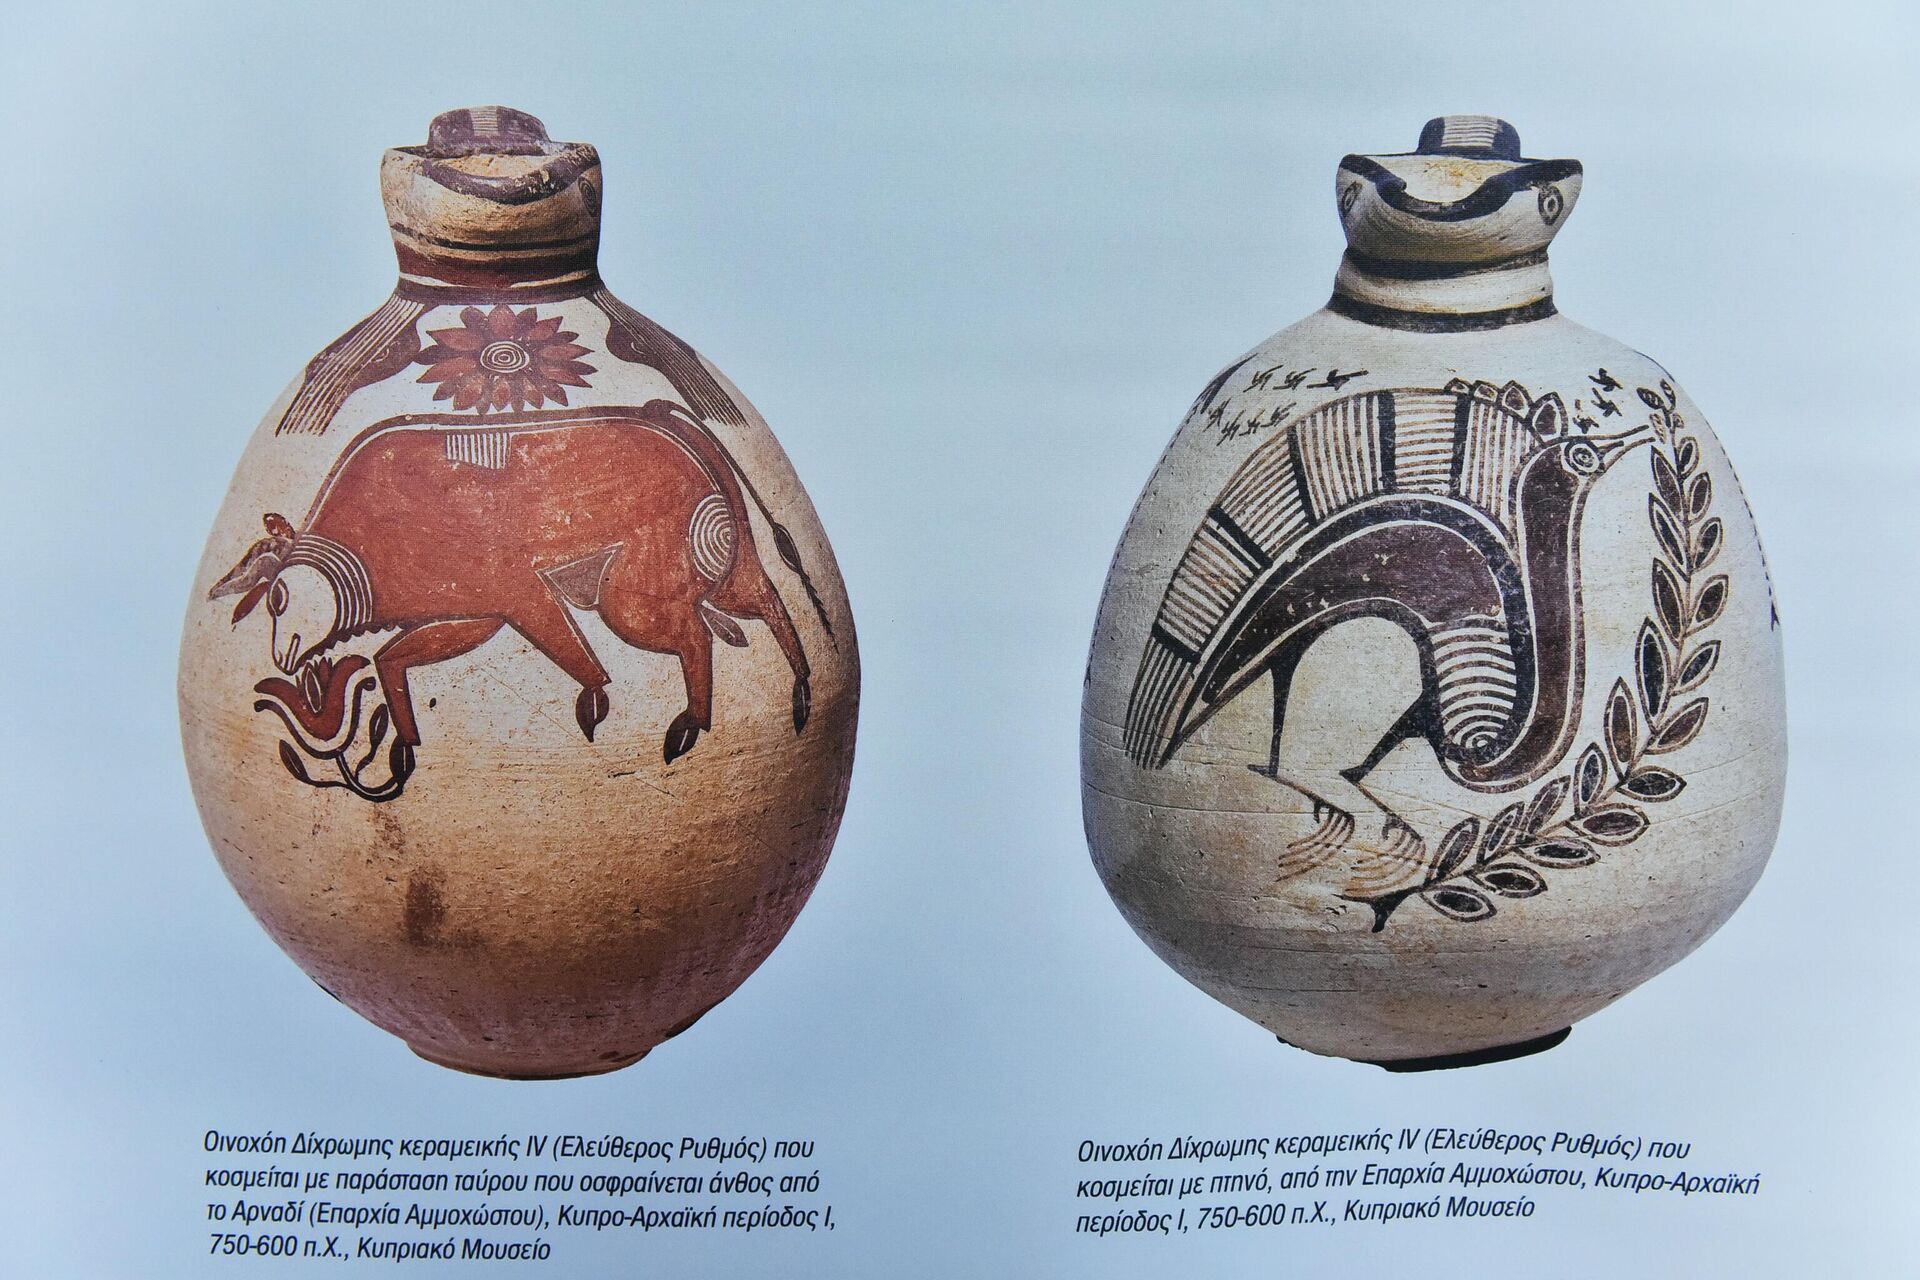 Бокали из кипарско - архајског периода, VI век пре н.е.  - Sputnik Србија, 1920, 24.06.2022